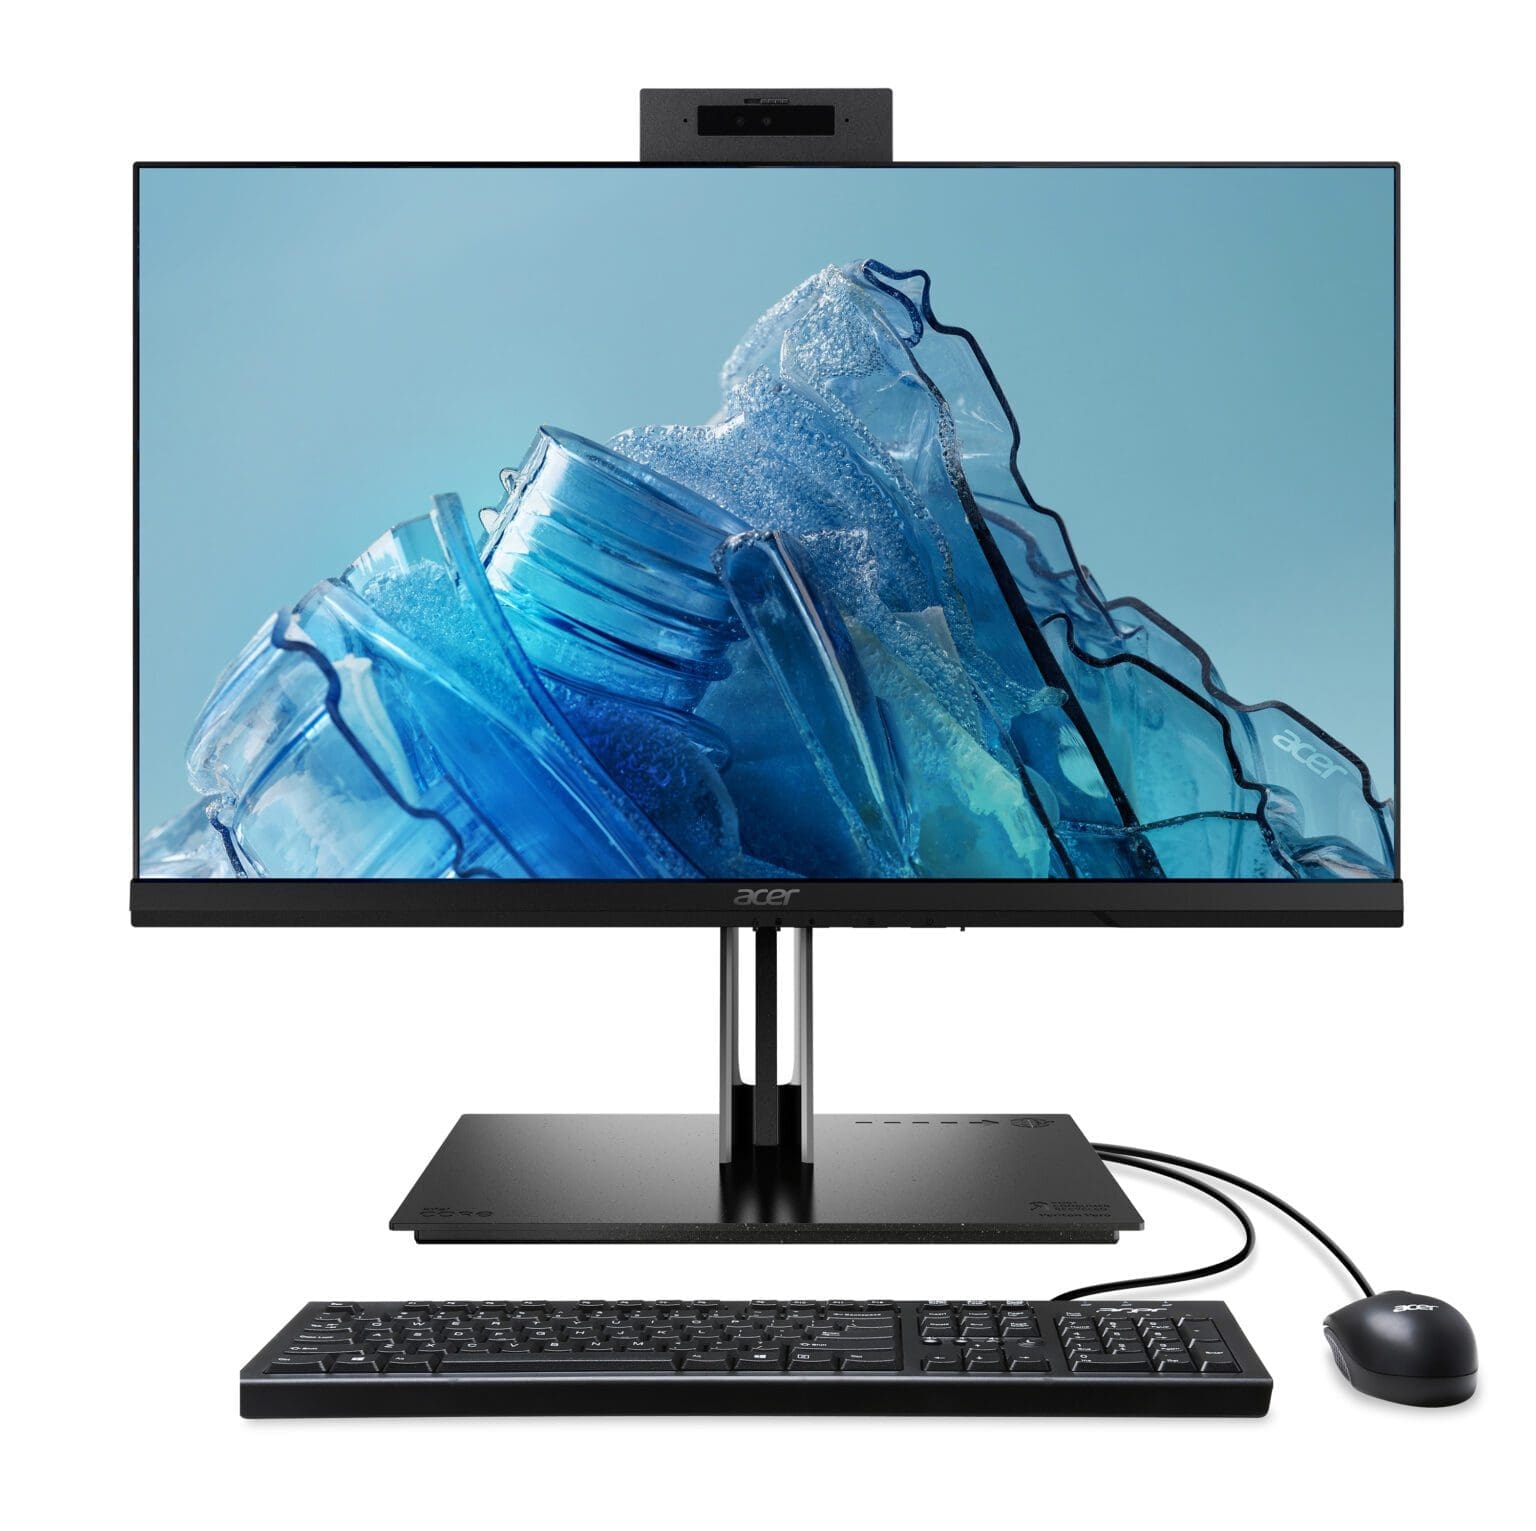 La familia Vero de Acer crece con nuevas laptops, desktop, monitores, proyectores y periféricos 9